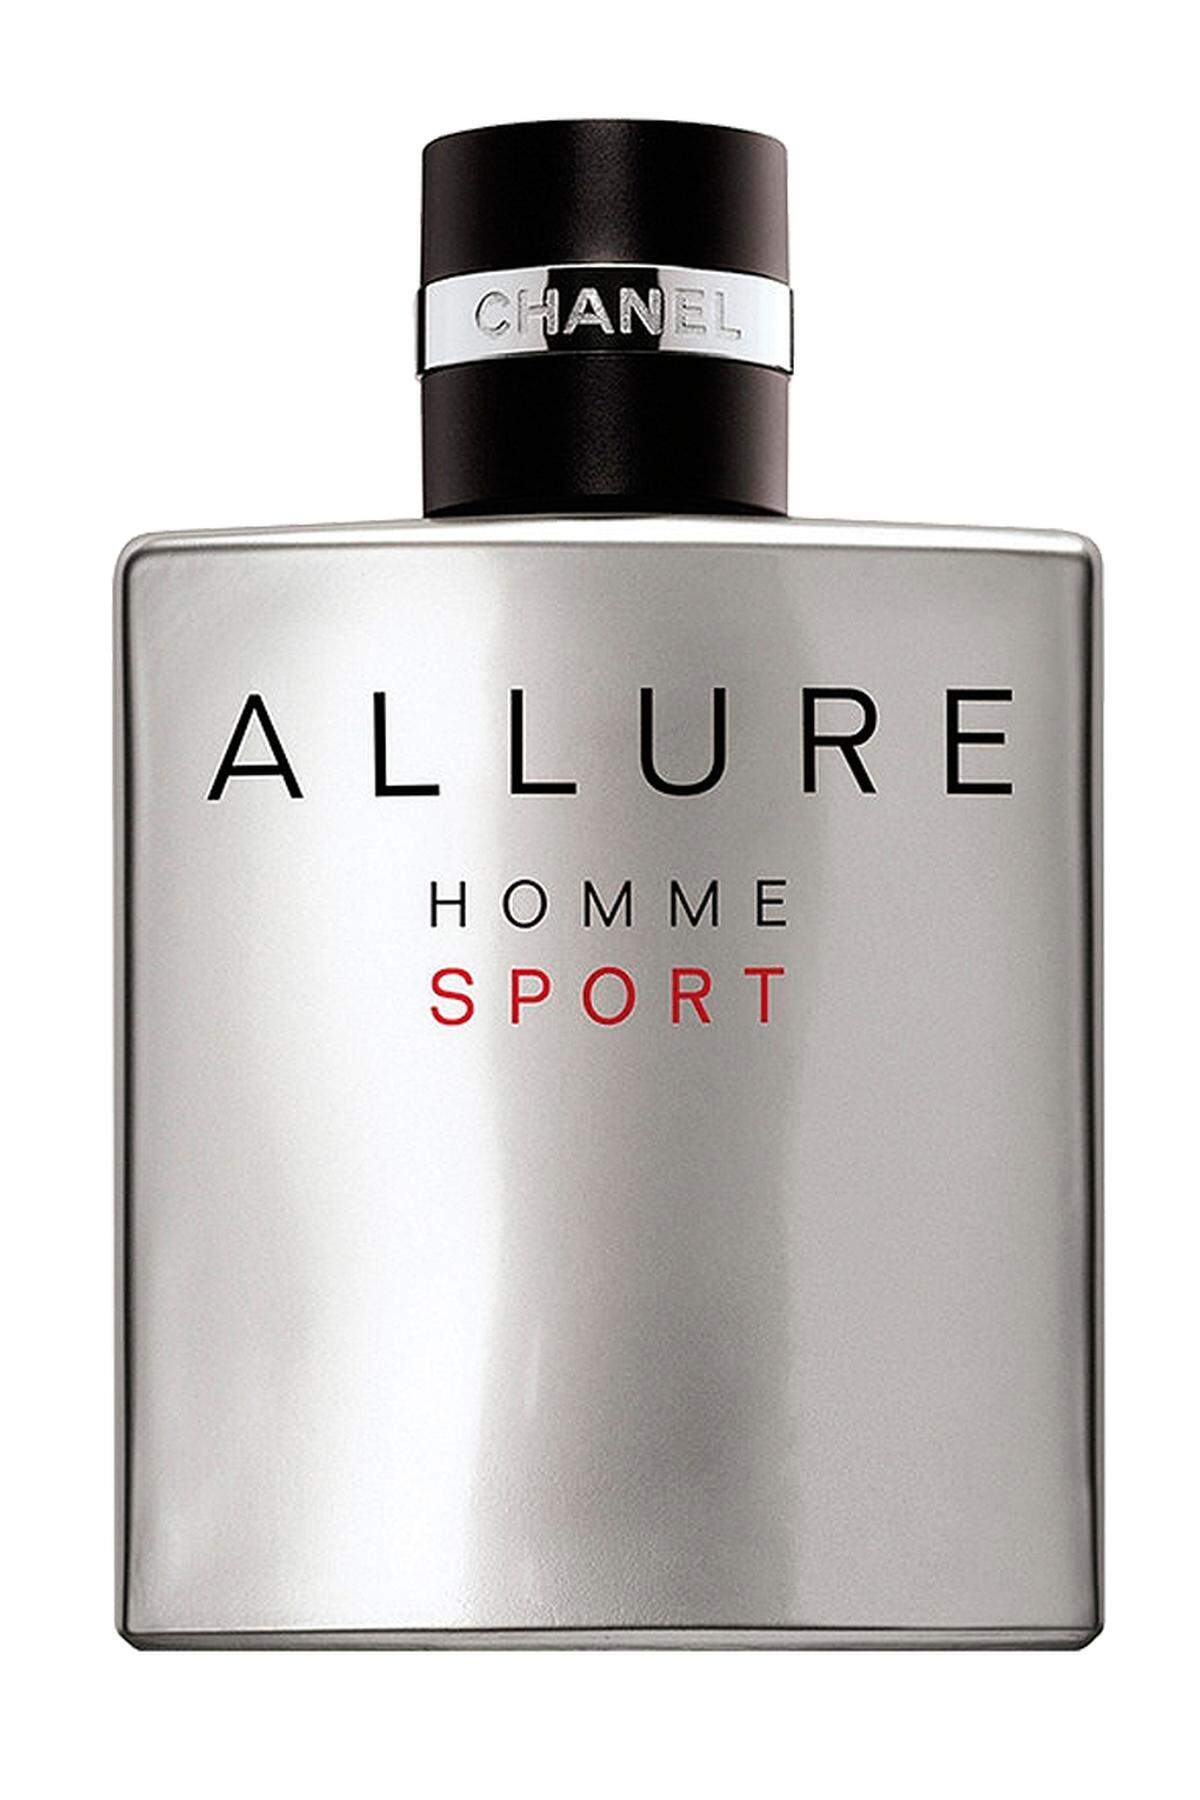 „Allure Homme Sport“ von Chanel, 69,95 Euro, im Fachhandel erhältlich